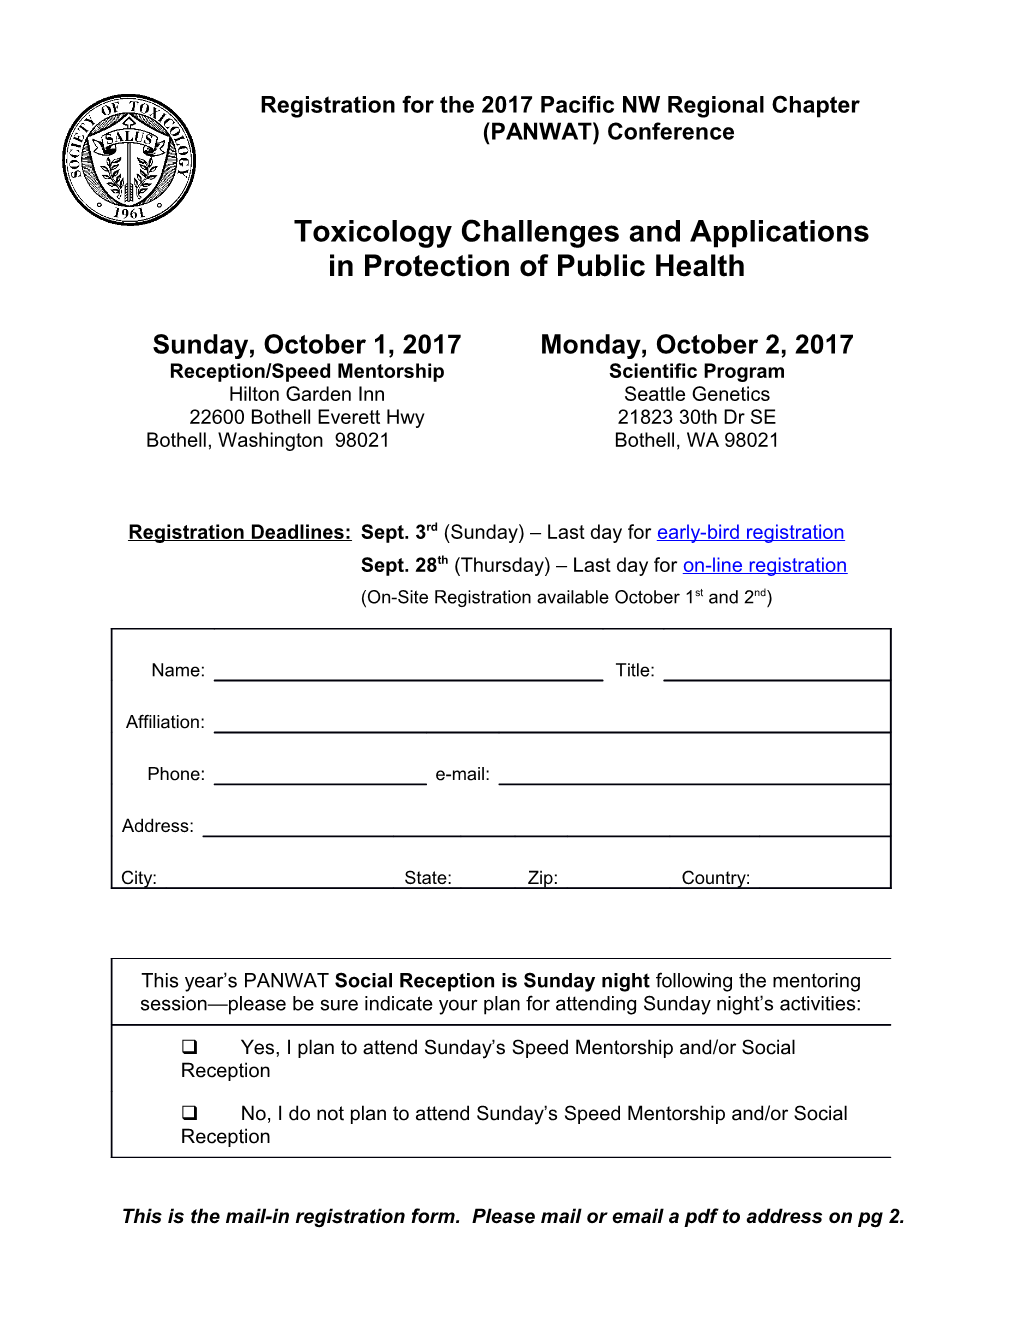 Regional Chapter Registration Form